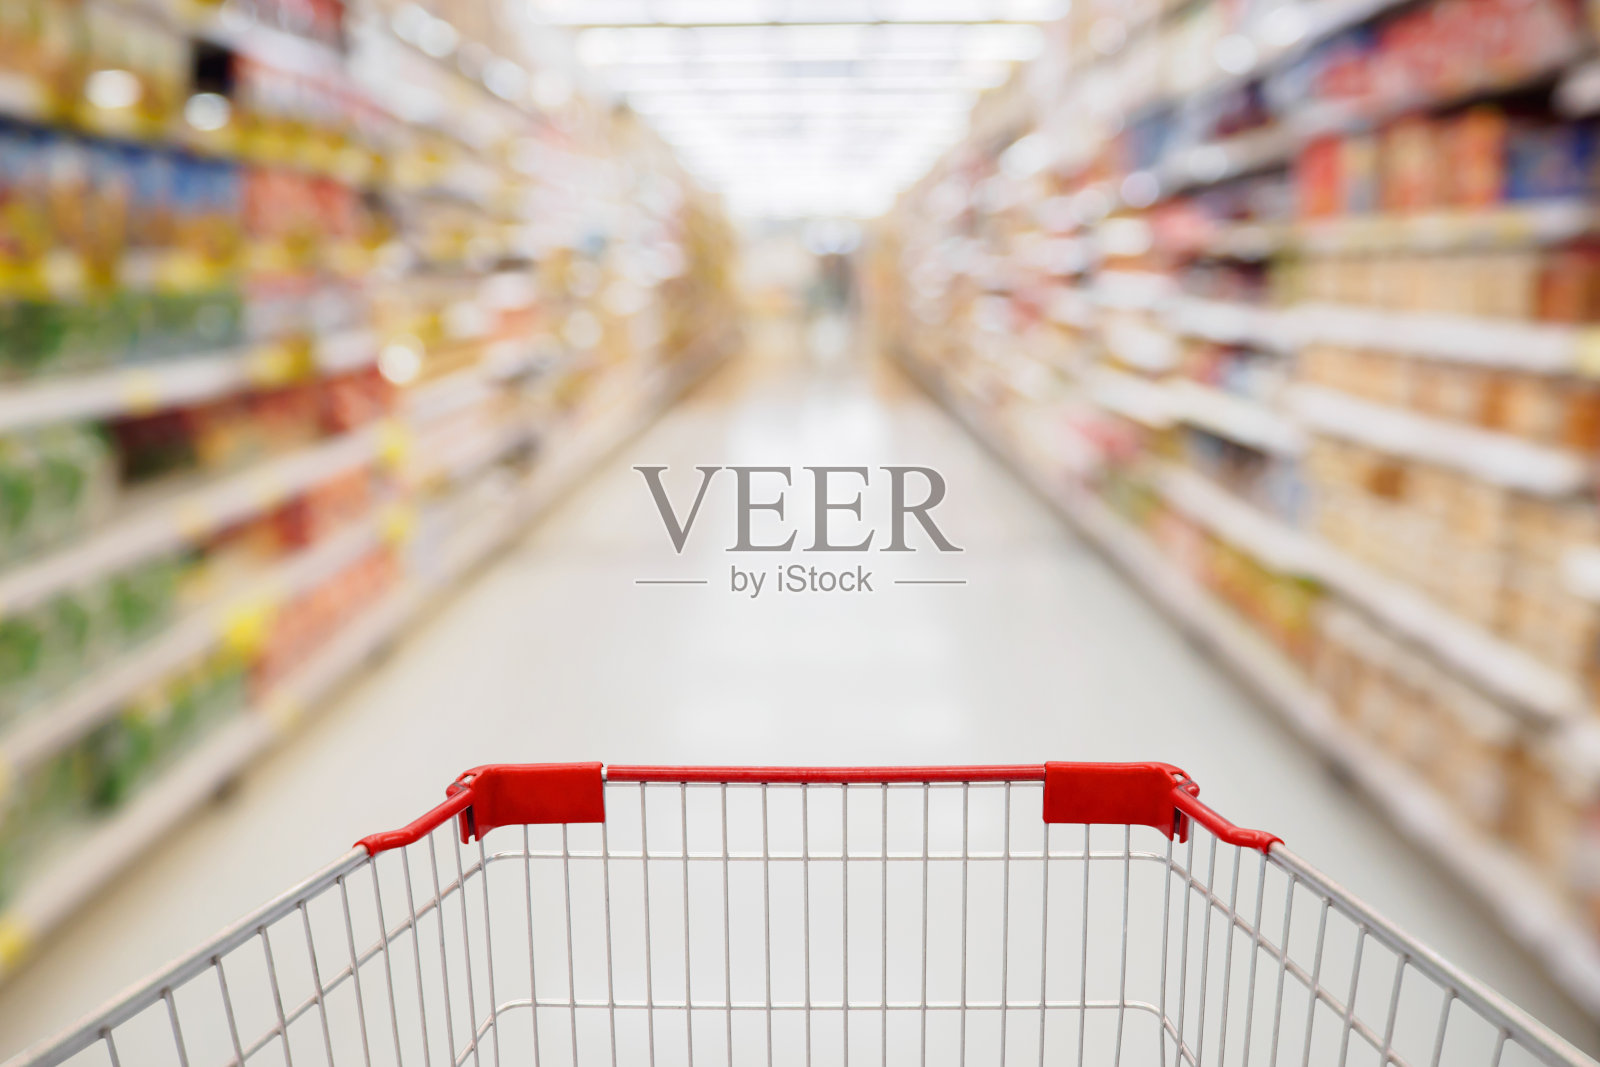 购物车视图在超市过道与产品货架抽象模糊散焦背景照片摄影图片